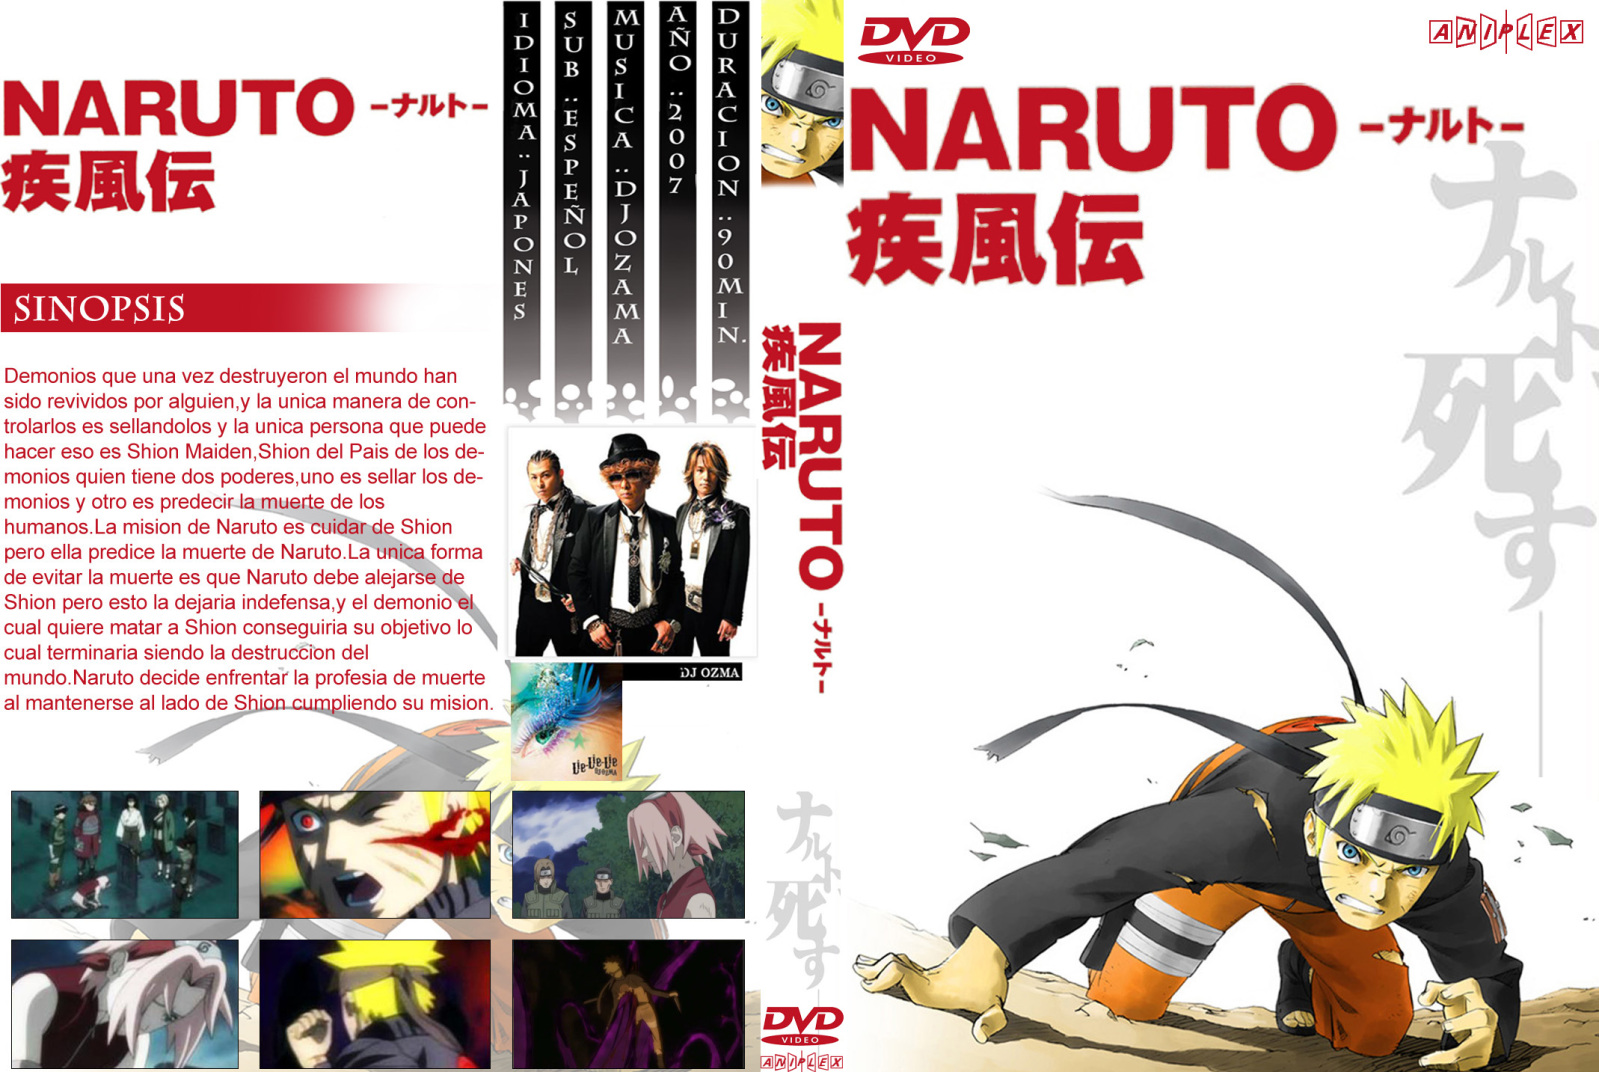 18i1le - [DD] Naruto Shippuden Película 1 La Muerte de Naruto - Anime Ligero [Descargas]